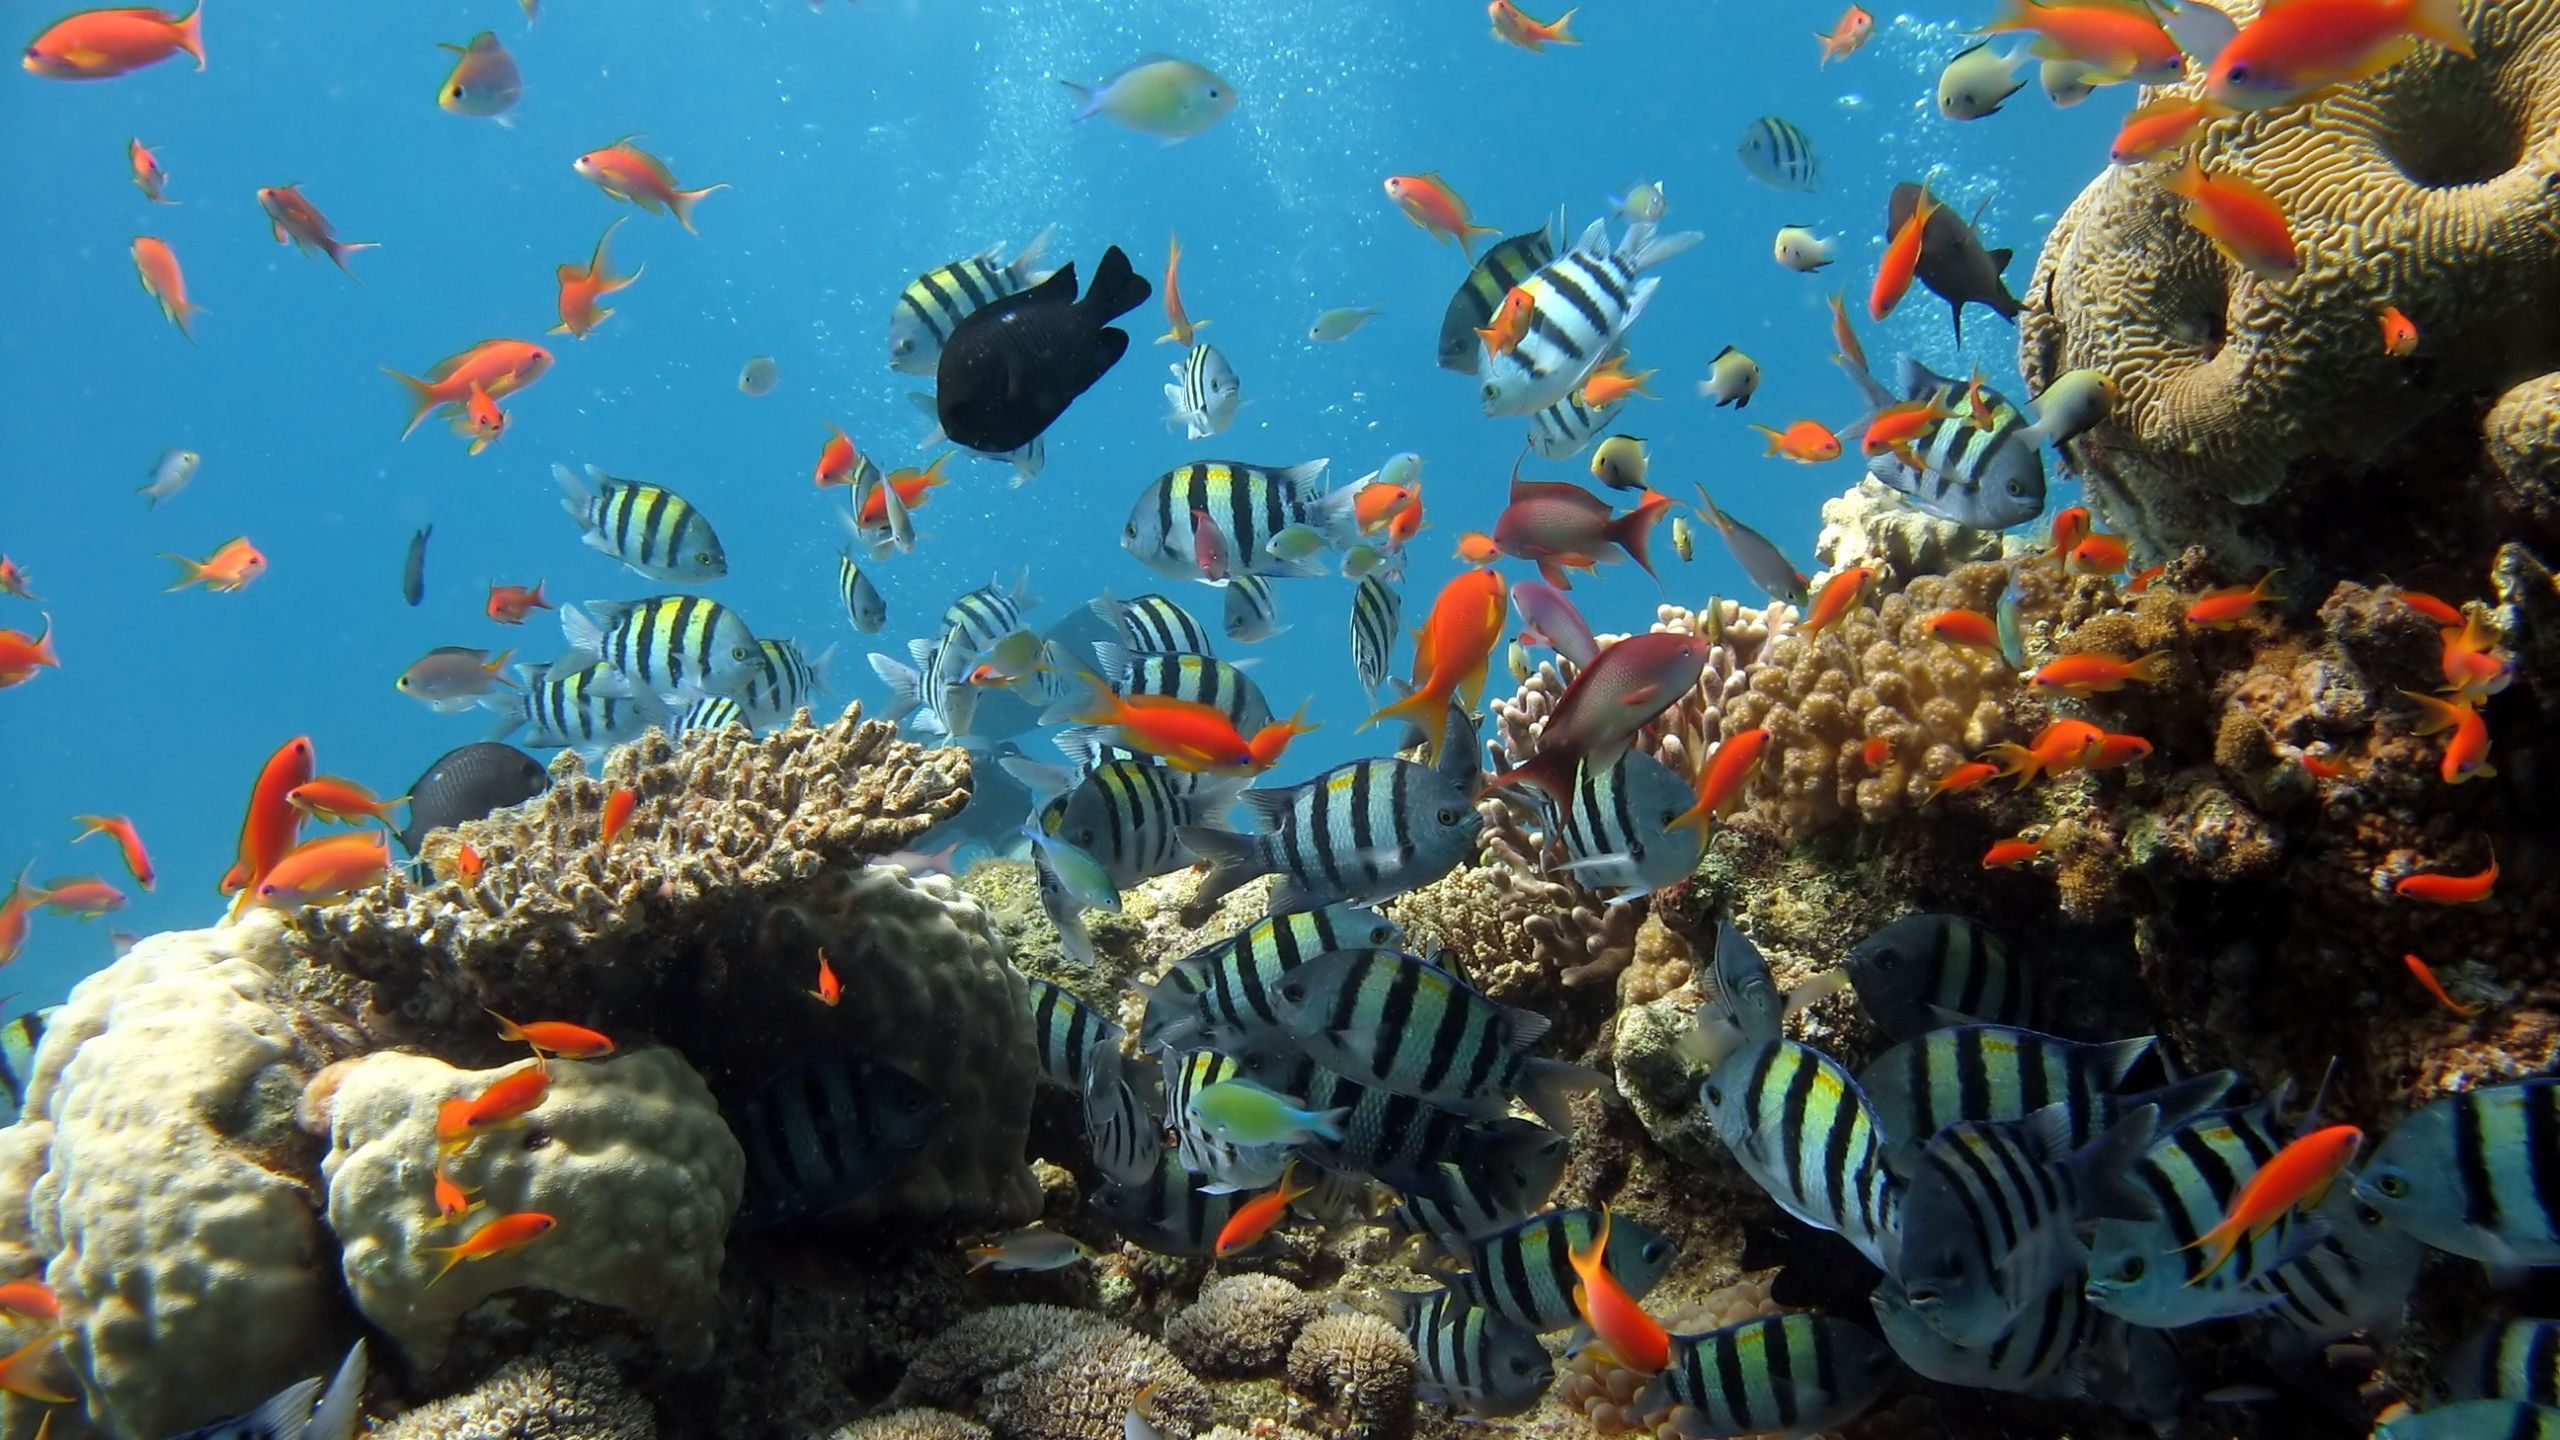  Aquarien Hintergrundbild 2560x1440. Kostenlose Hintergrundbilder Fischschwarm im Aquarium, Bilder Für Ihren Desktop Und Fotos